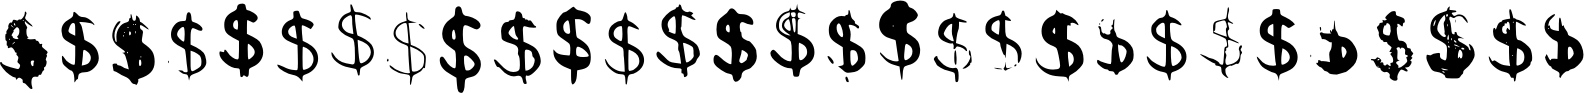 BM Graphics - Dollar Symbol